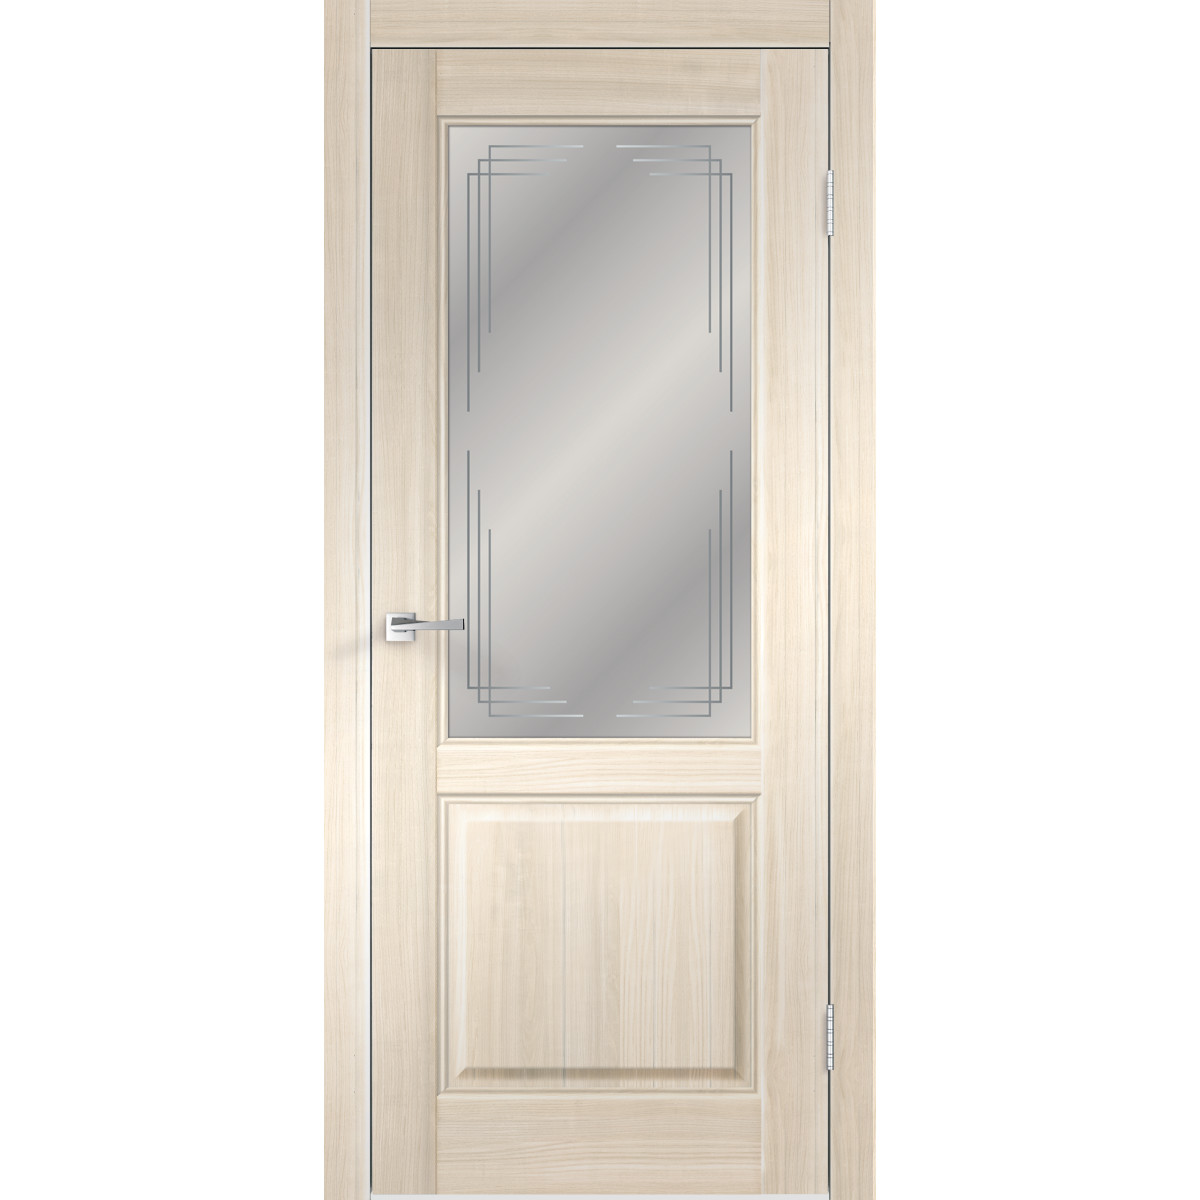 Дверь межкомнатная остеклённая Вилла 2Р 70х200 см с фурнитурой, ПВХ, цвет японский ясень